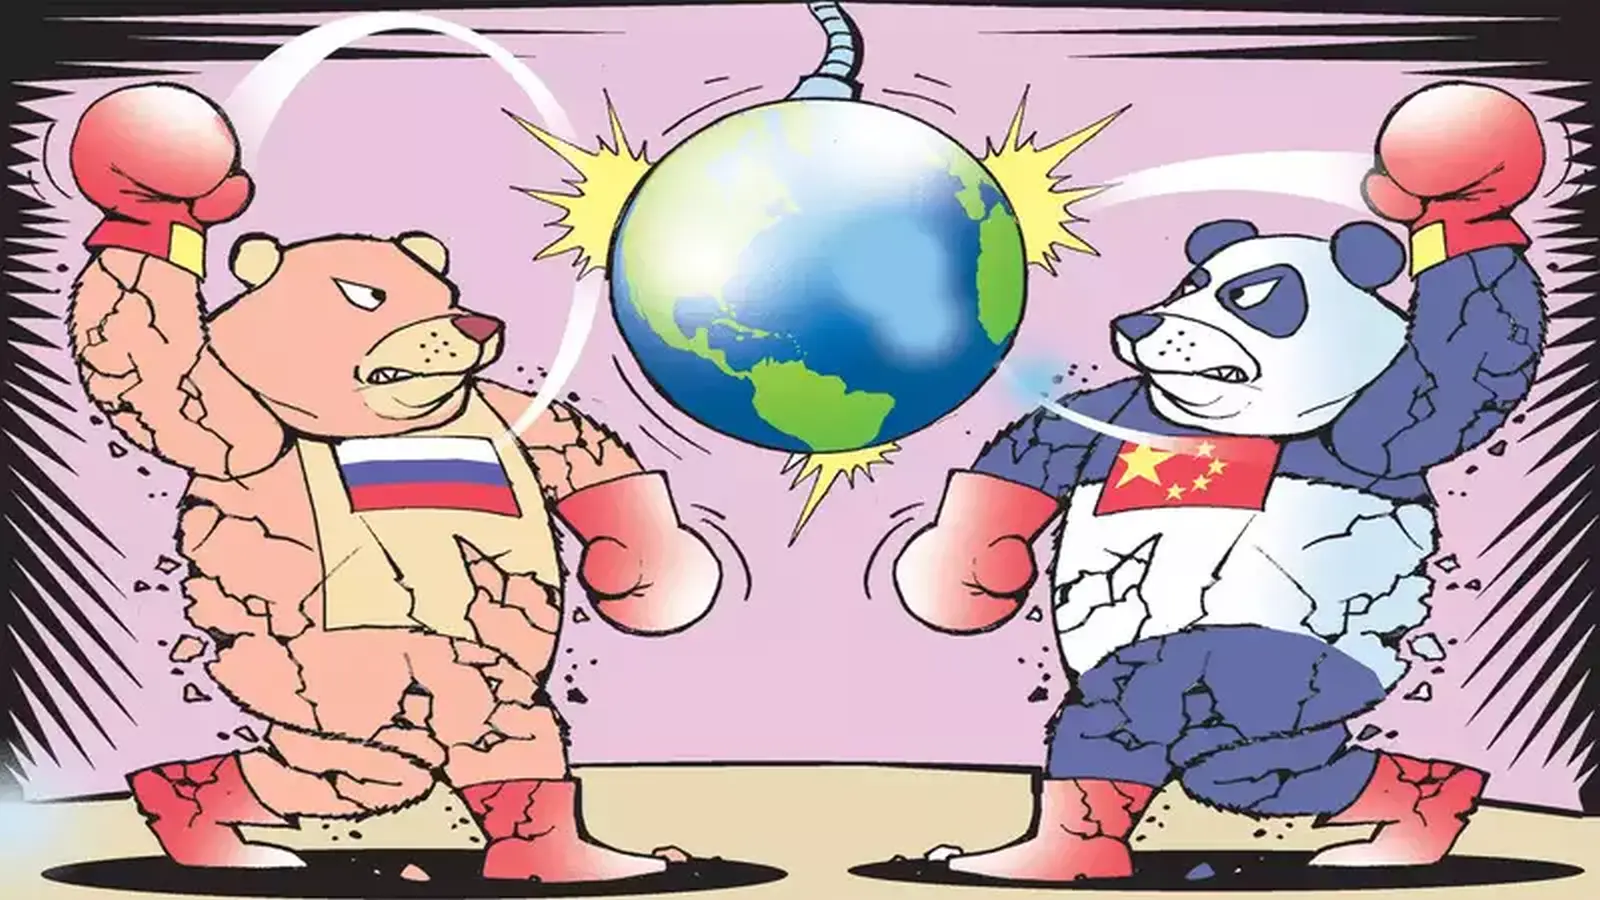 I giochi di guerra e di potere che uniscono Cina e Russia